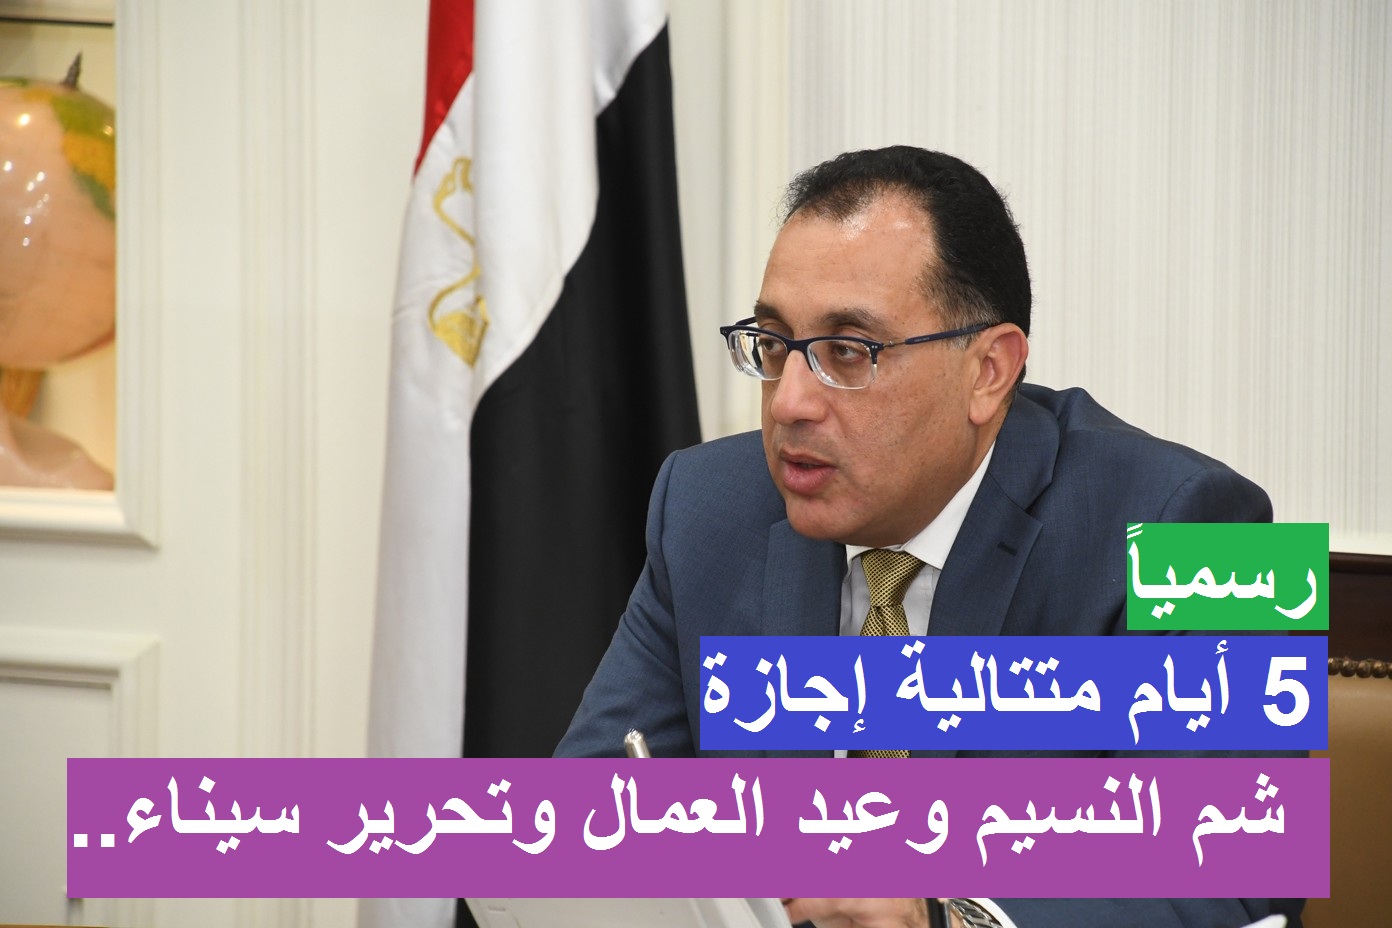 5 أيام متتالية إجازة.. قرارات رئيس الوزراء اليوم بشأن إجازة عيد العمال وشم النسيم وتحرير سيناء